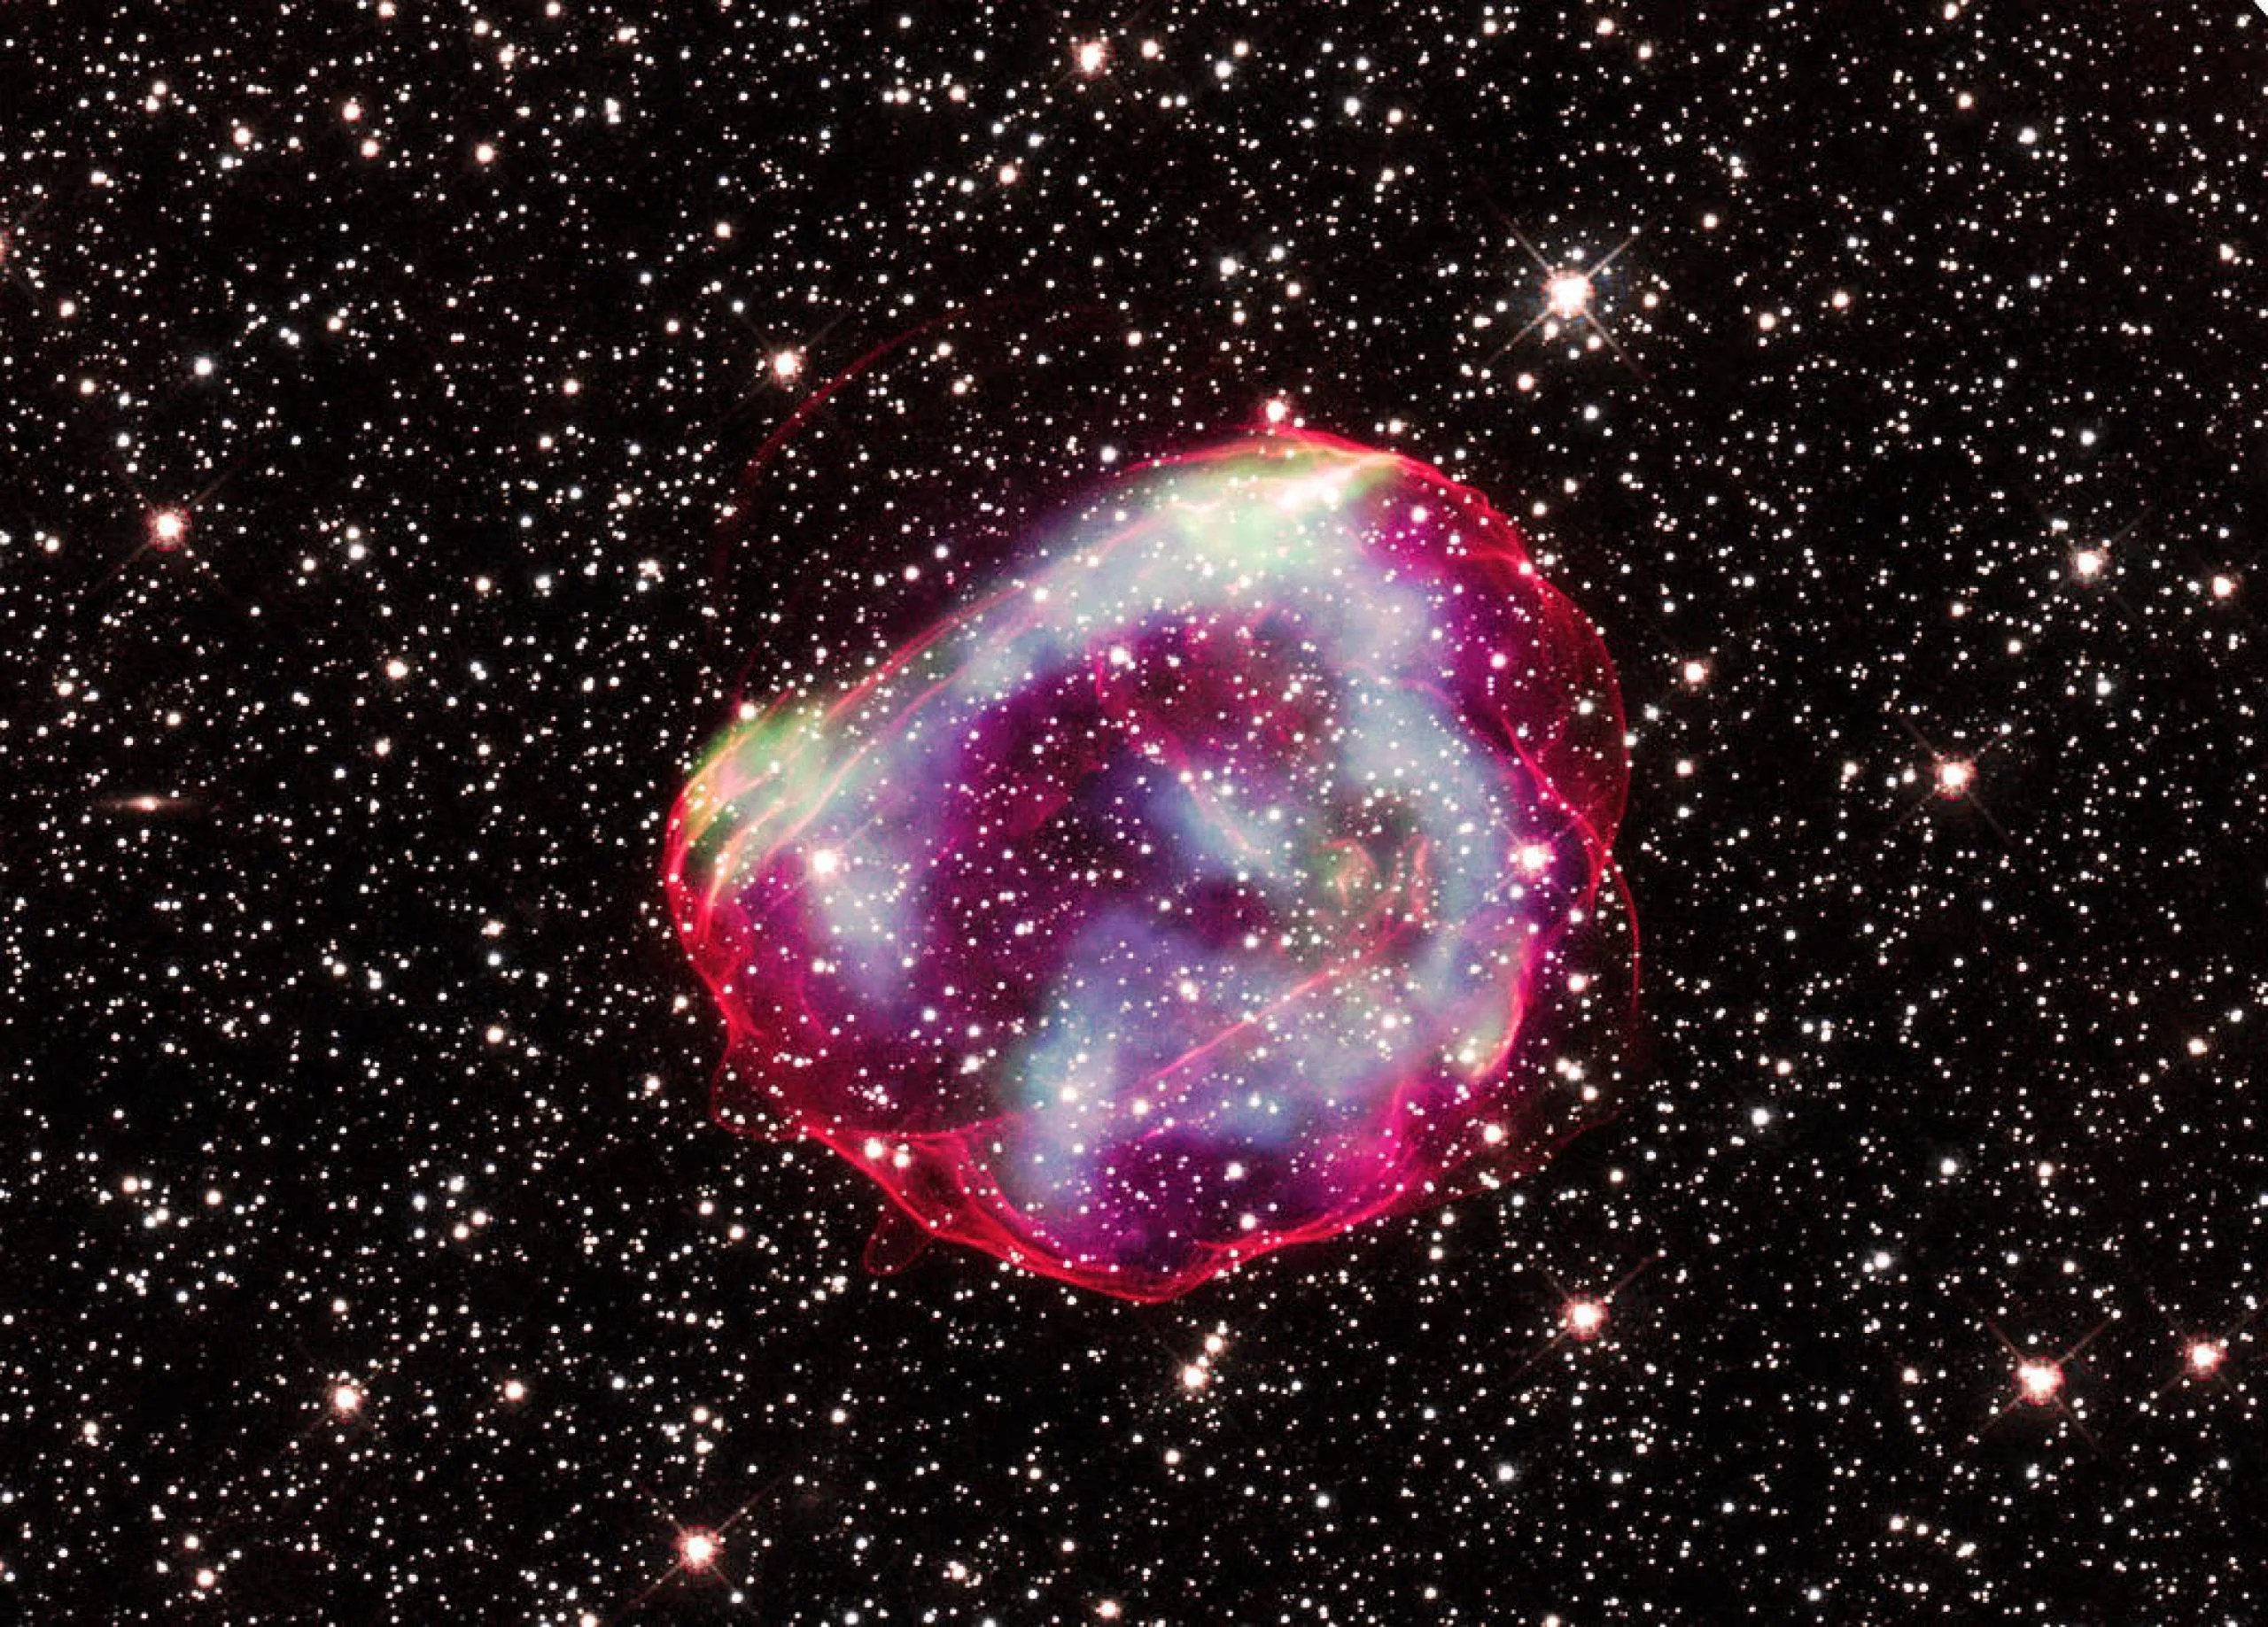 El remanente de supernova llamado SNR 0519-69.0 (SNR 0519 para abreviar). Son los restos de la explosión de una estrella enana blanca.